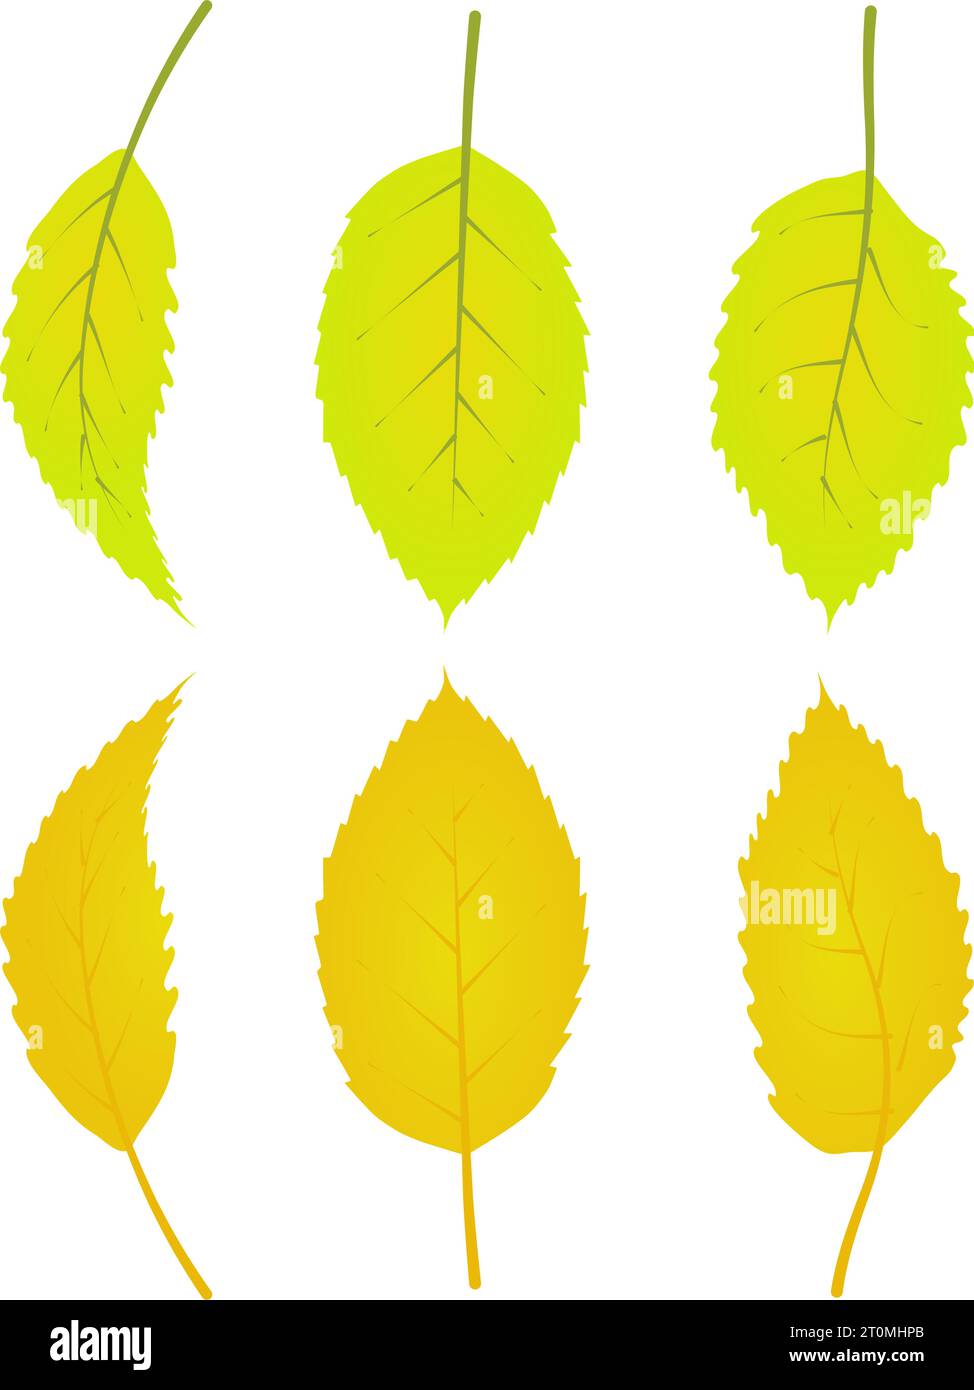 Grafik Illustrated Herbstblätter Laub gefallene Grafik Illustrationen Farben Goldgelb Stock Vektor